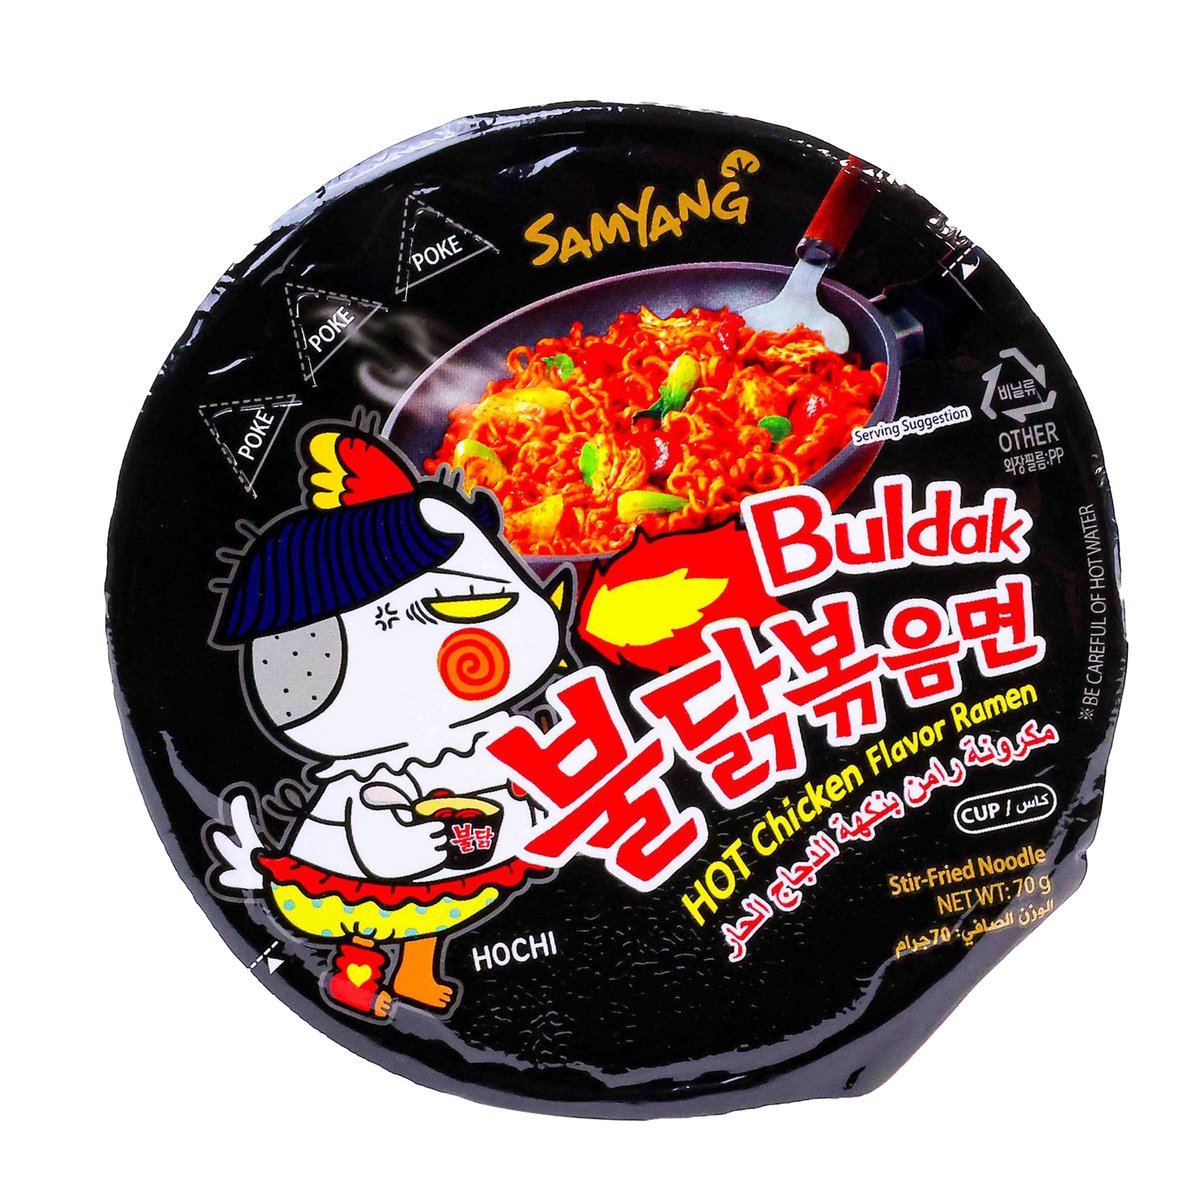 Samyang Hot Chicken Stir Fried Noodle 70 g